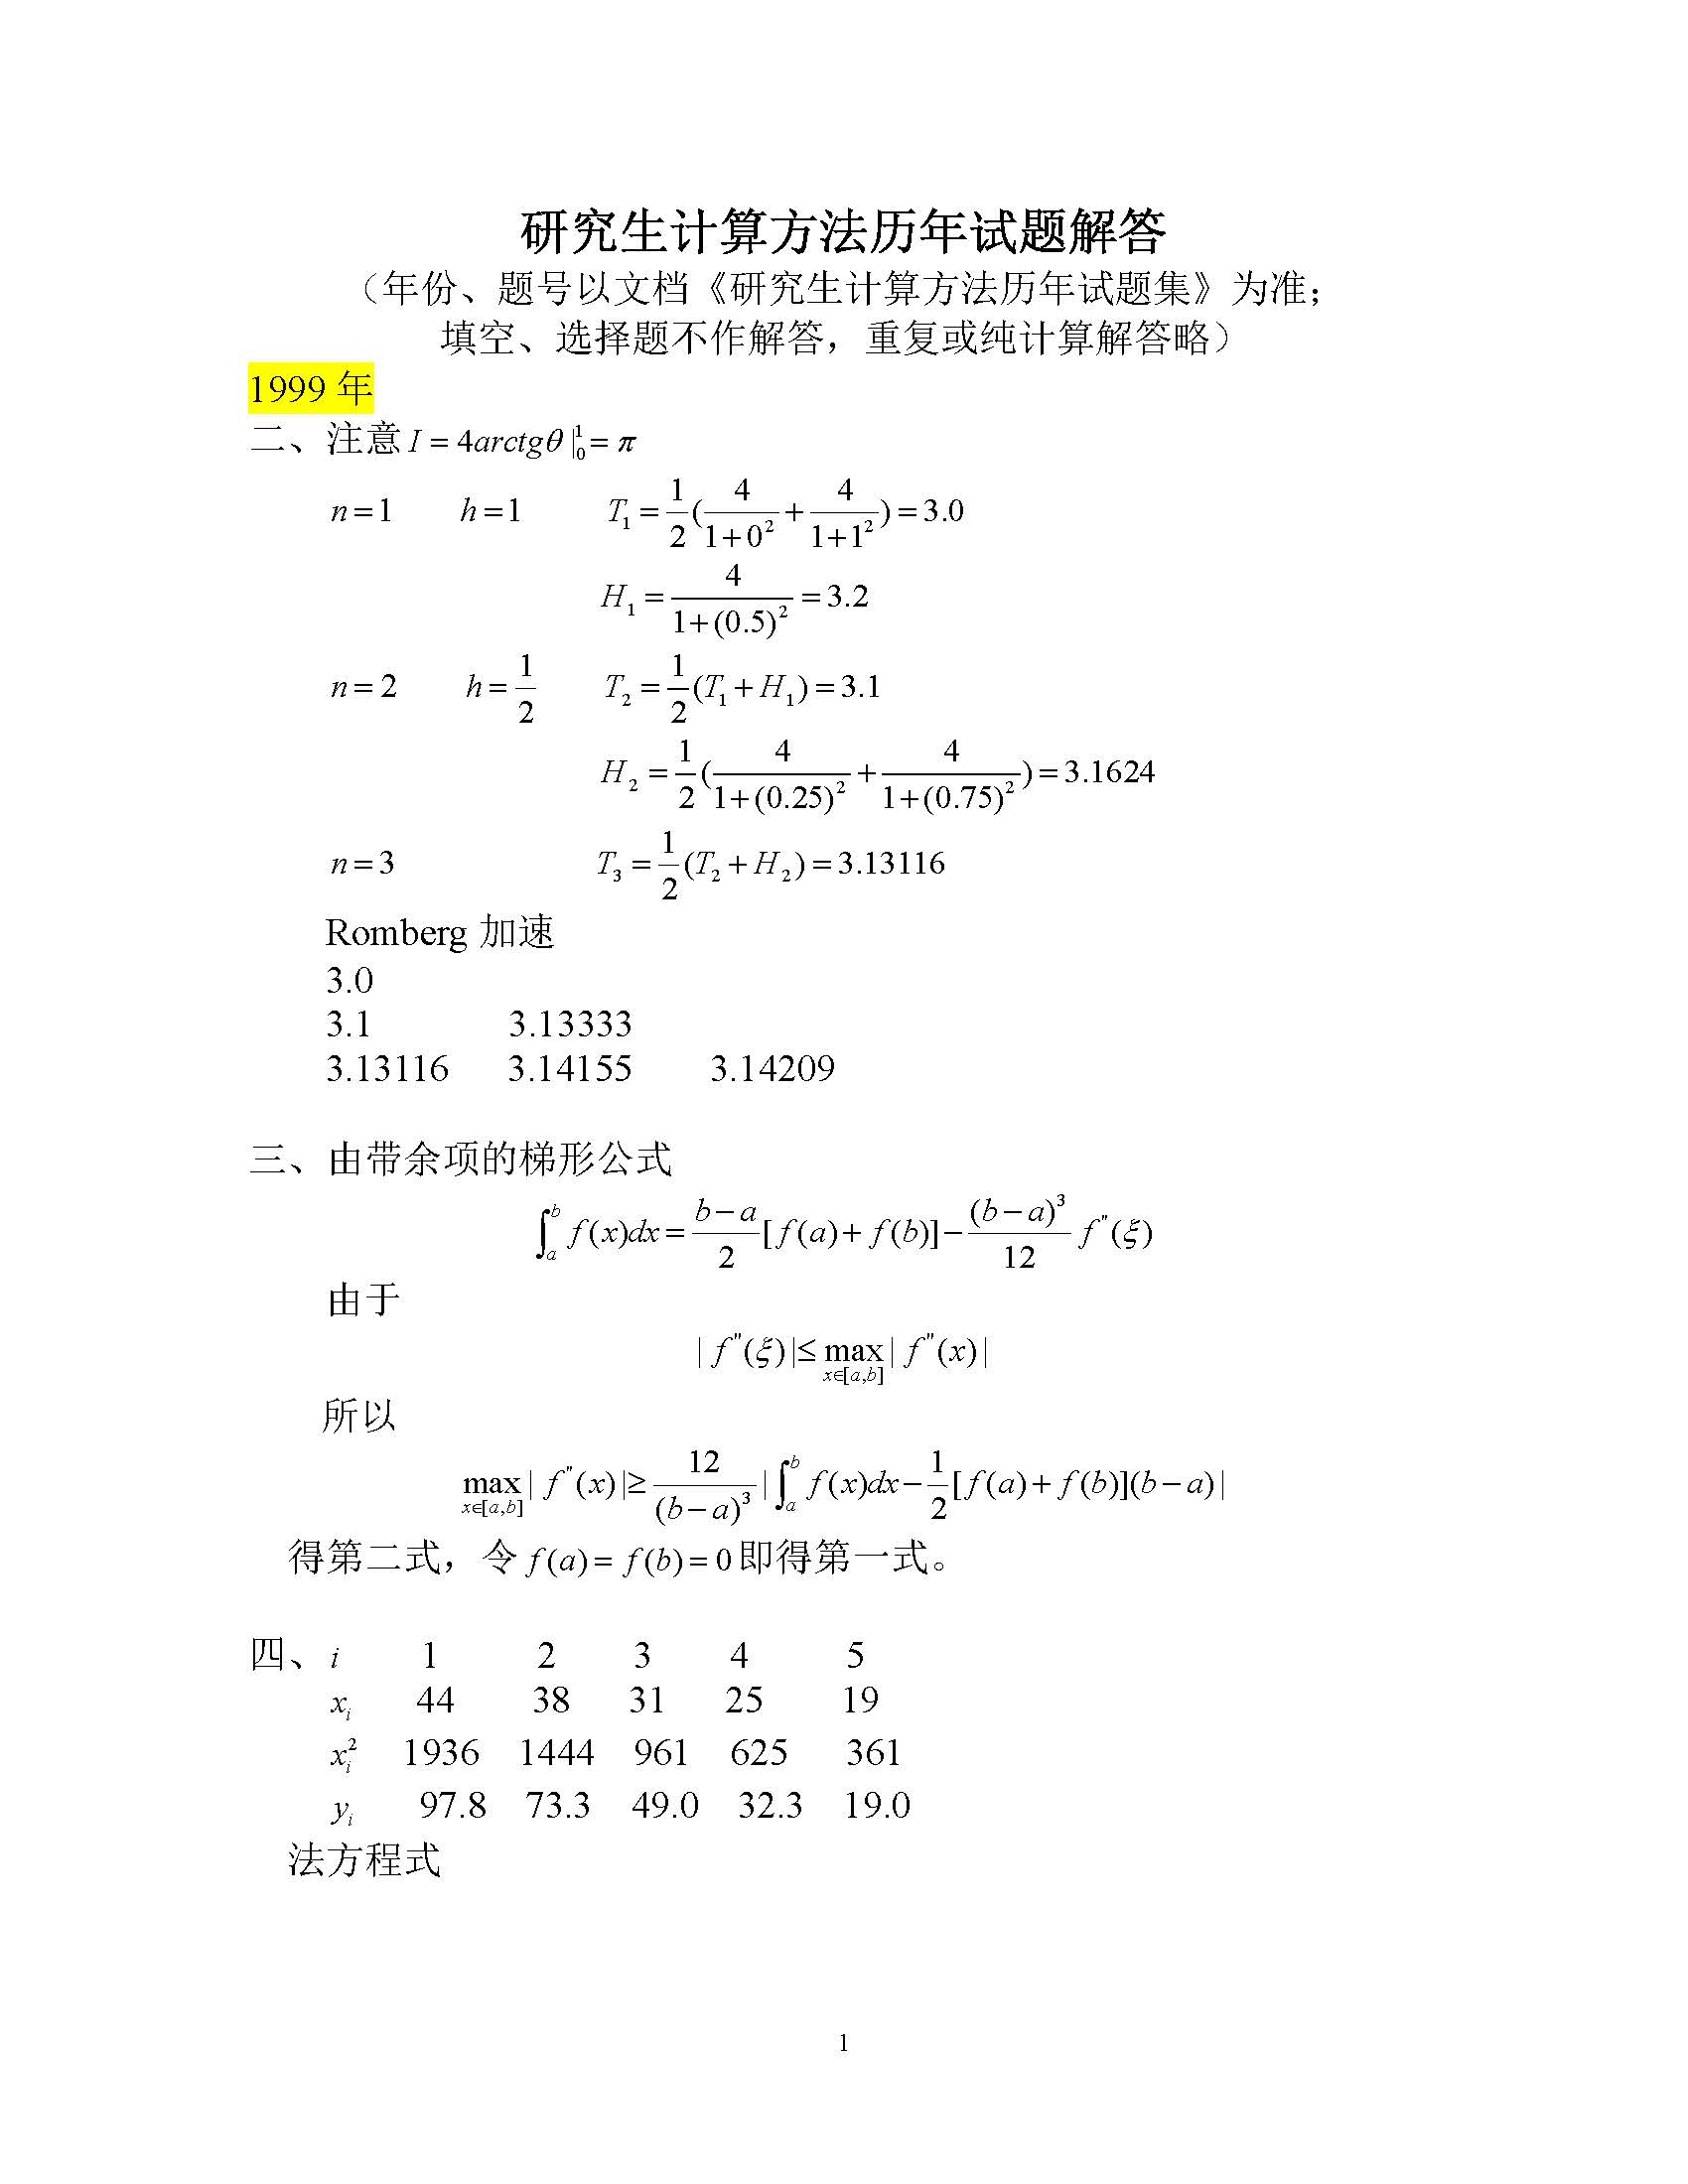 1999年上海交通大学研究生计算方法试题,上海交通大学,第1张